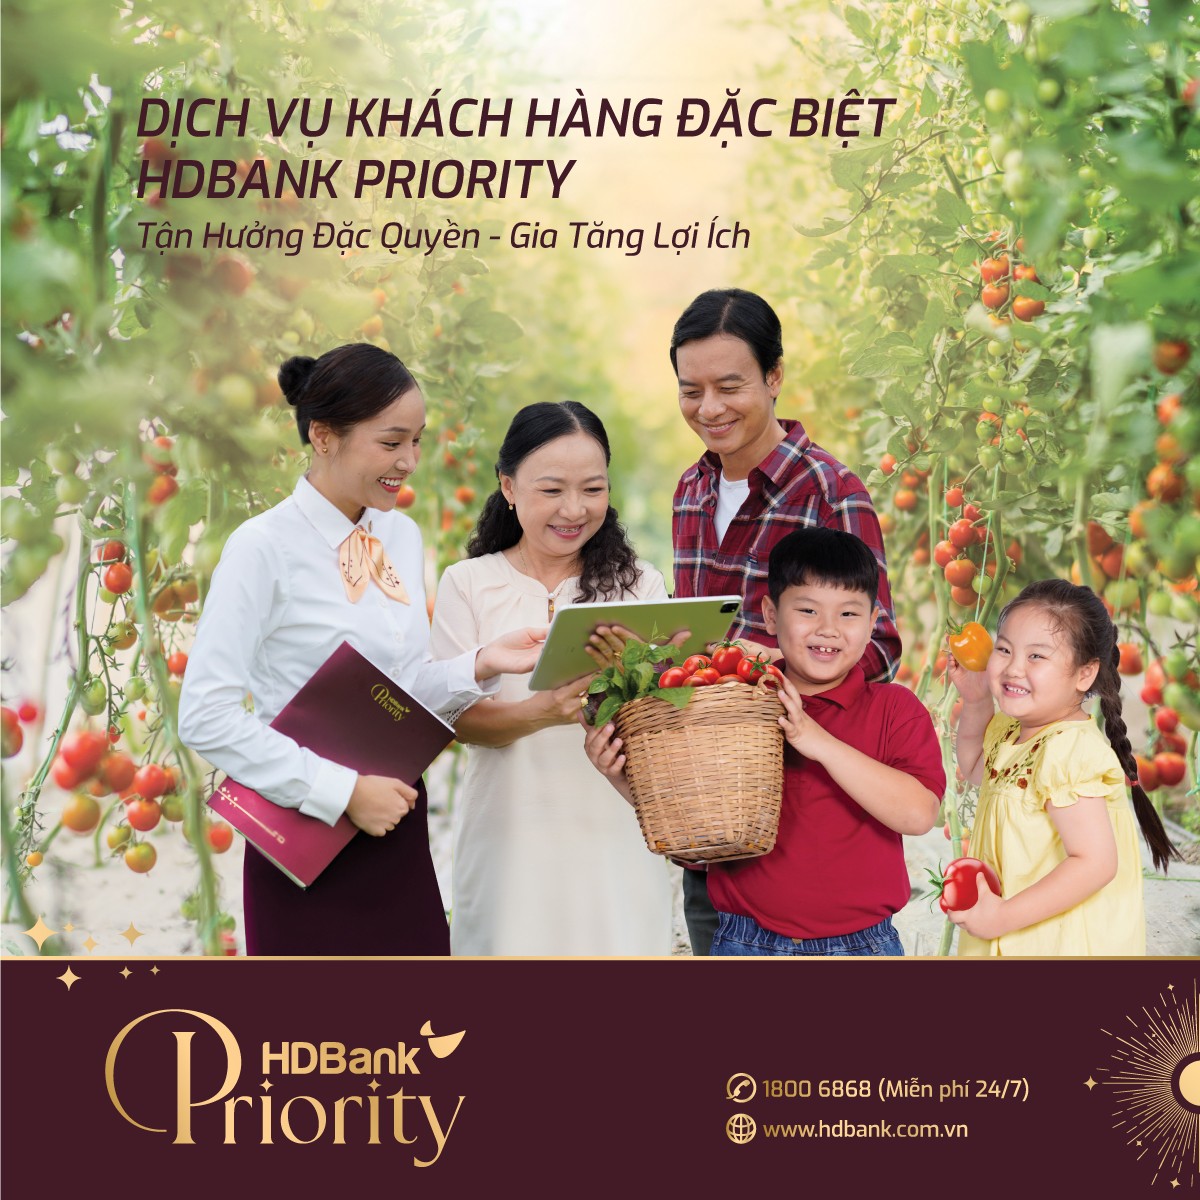 Thẻ tín dụng HDbank Priority - Tinh Tú Phương Đông: Ưu đãi ngập tràn cho khách hàng đặc biệt